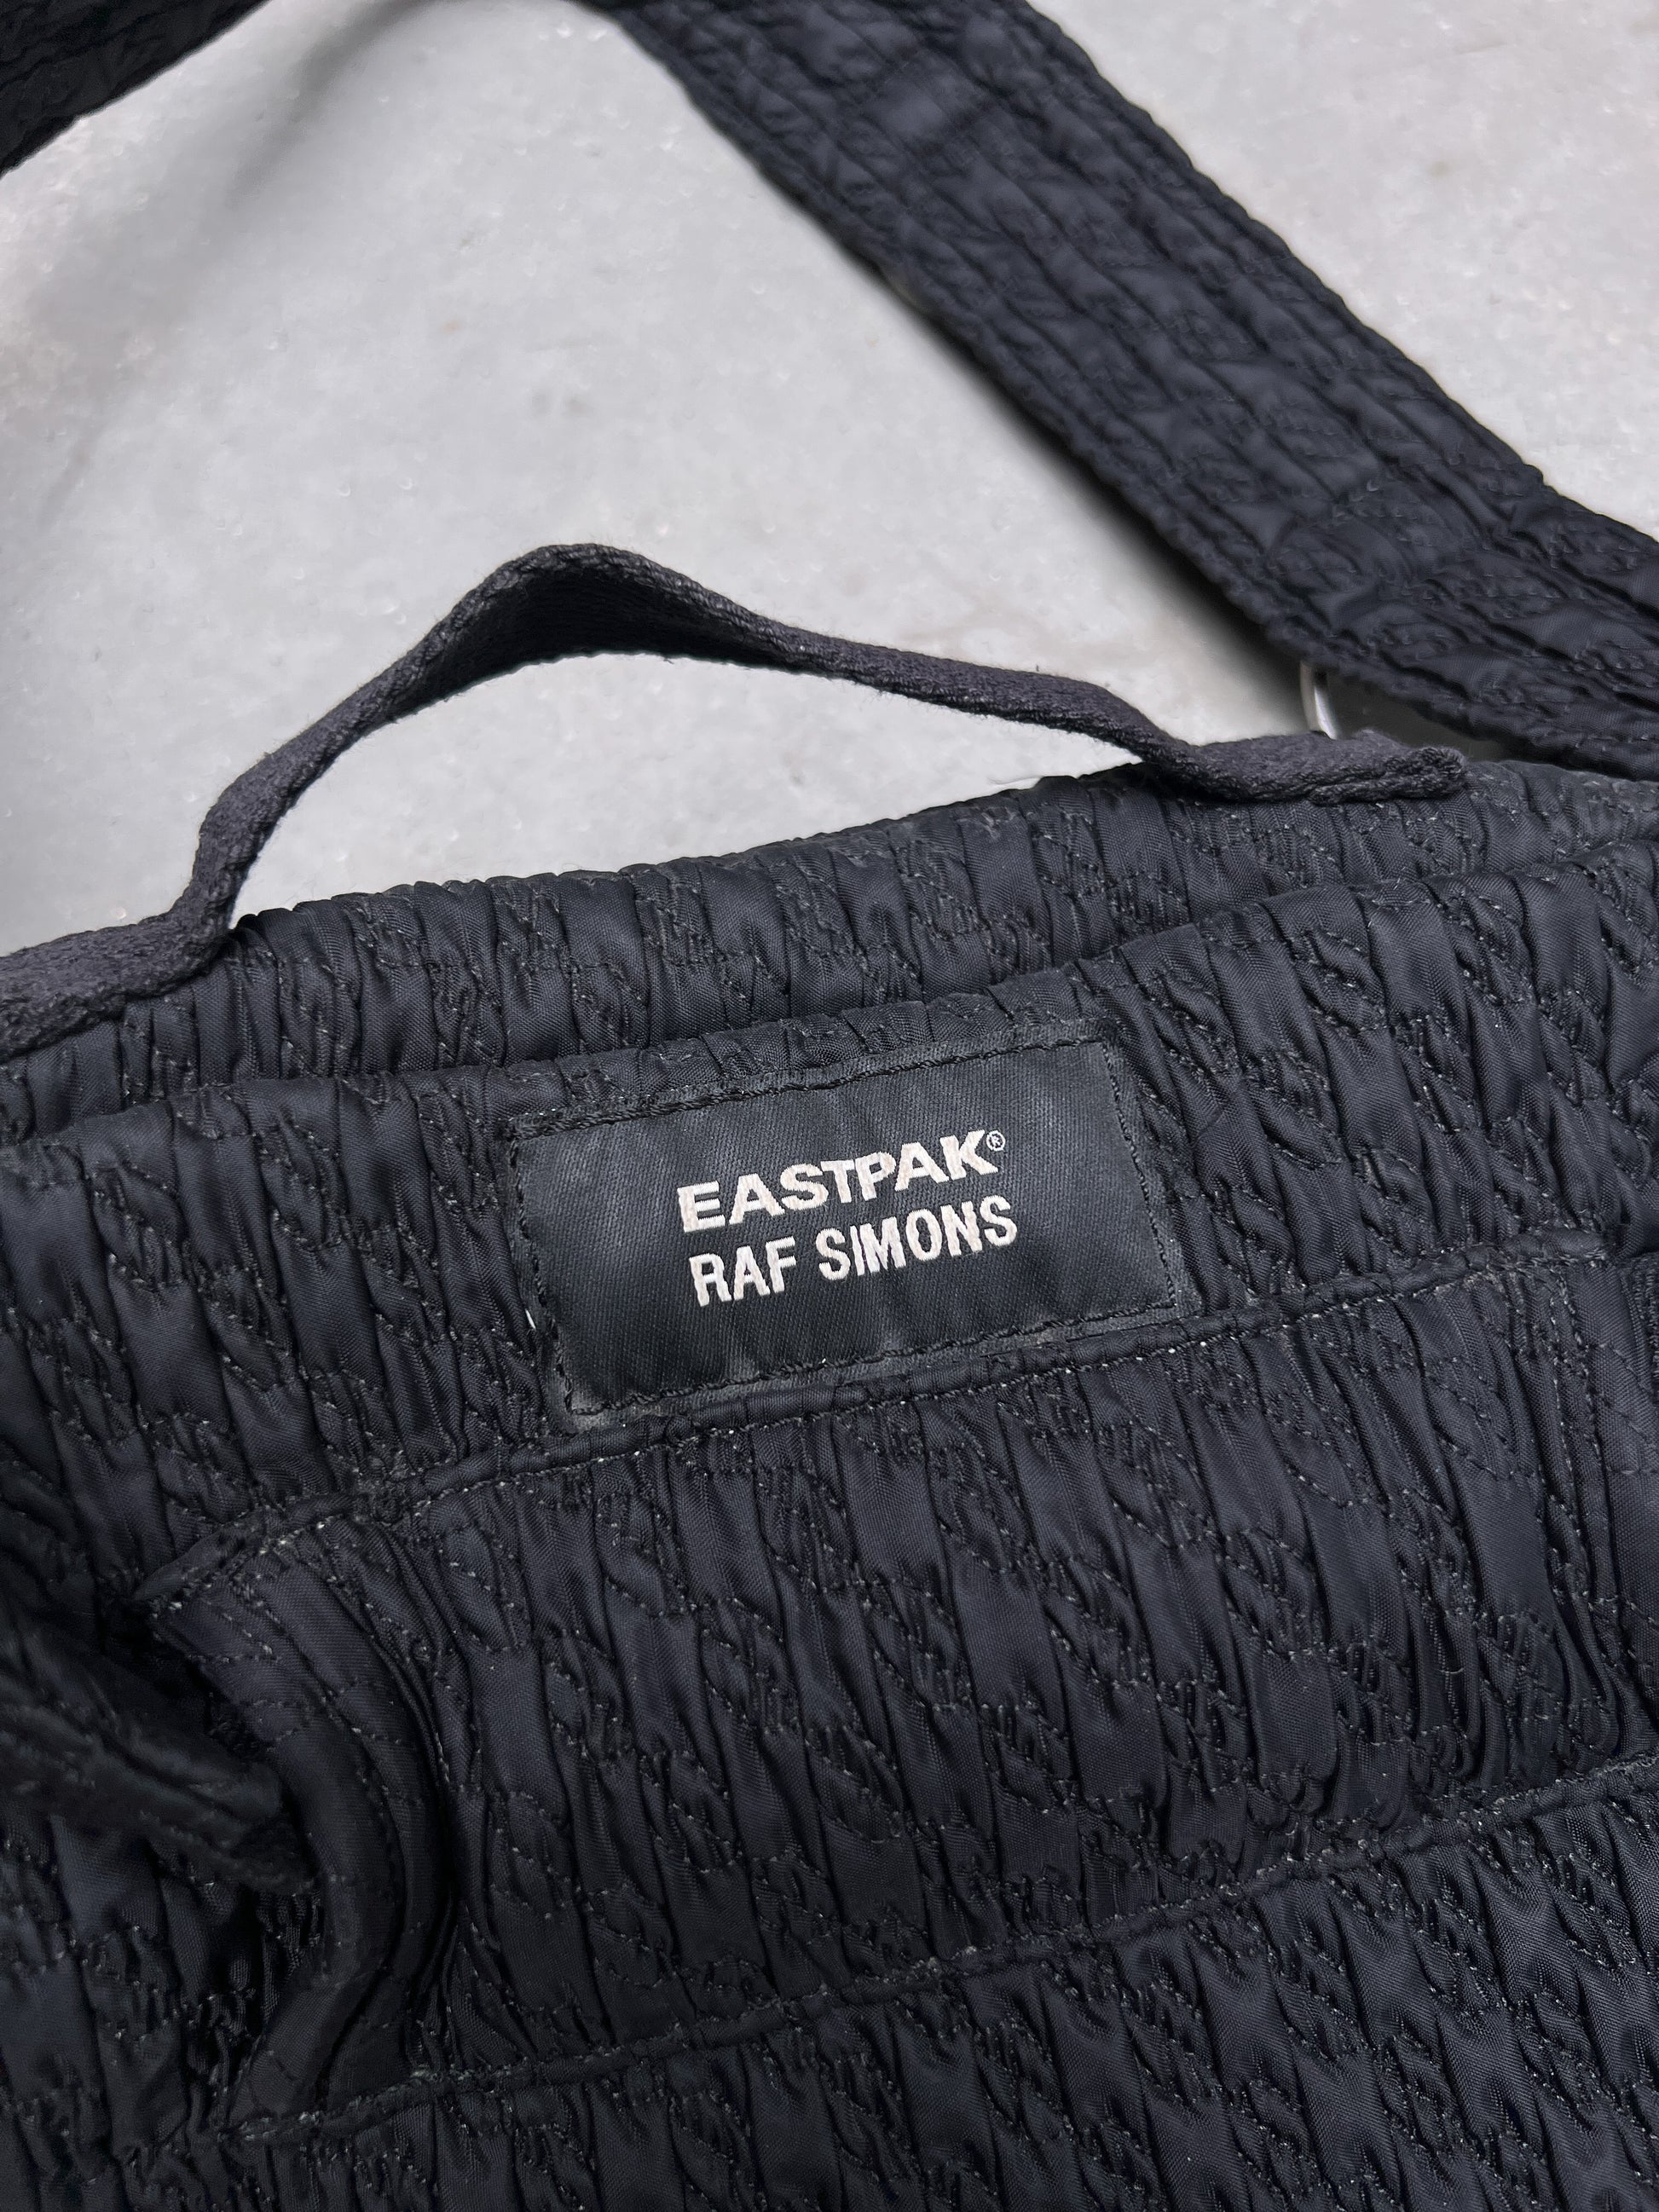 Raf Simons x EASTPAK SS19 Bags SSENSE Drop